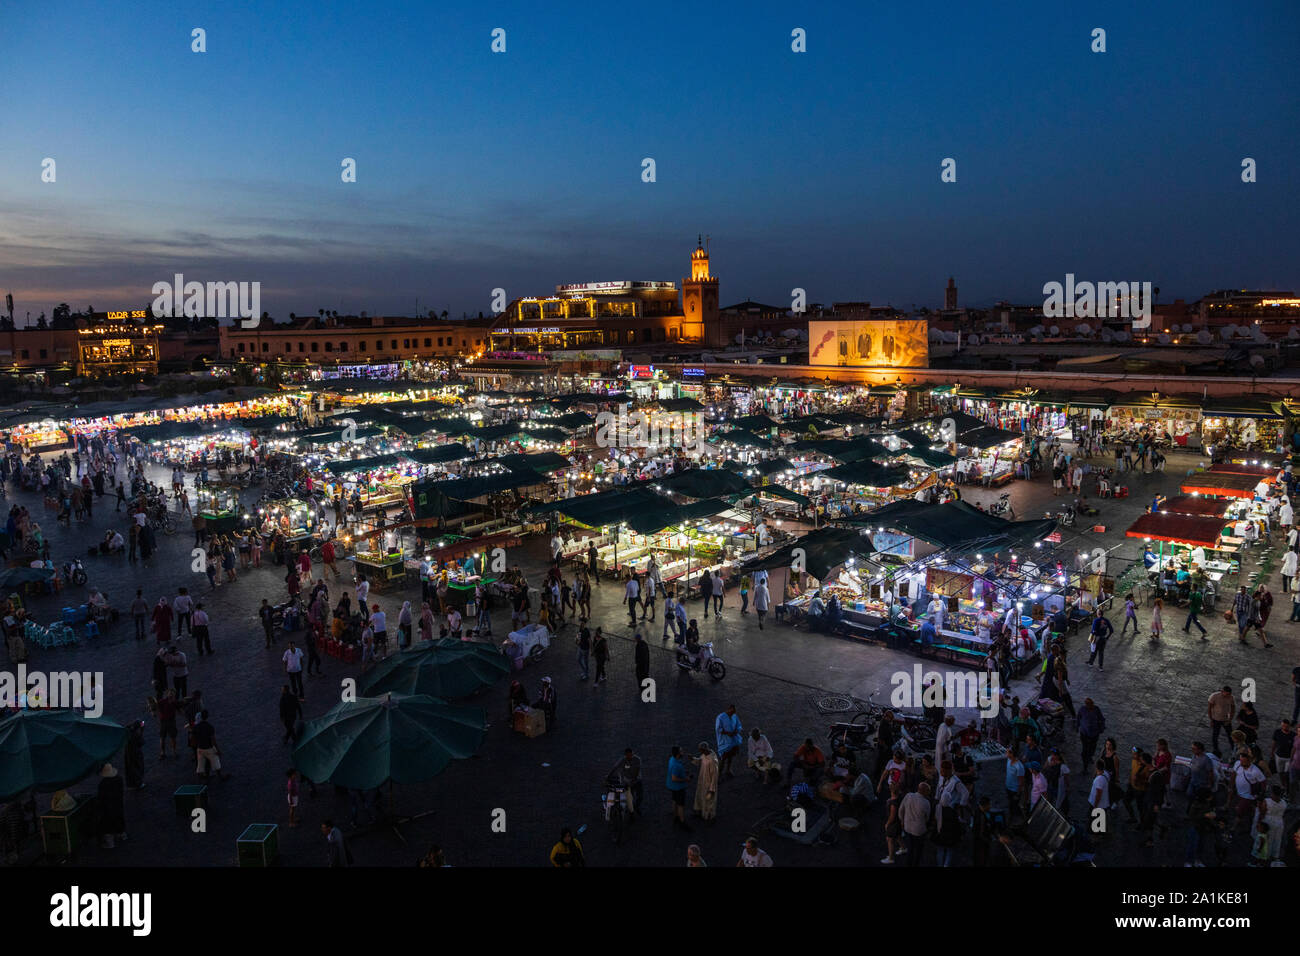 Puestos de comida en plaza de Jemaa-el-Fna al atardecer en Marrakech, Marruecos, Norte de África Foto de stock